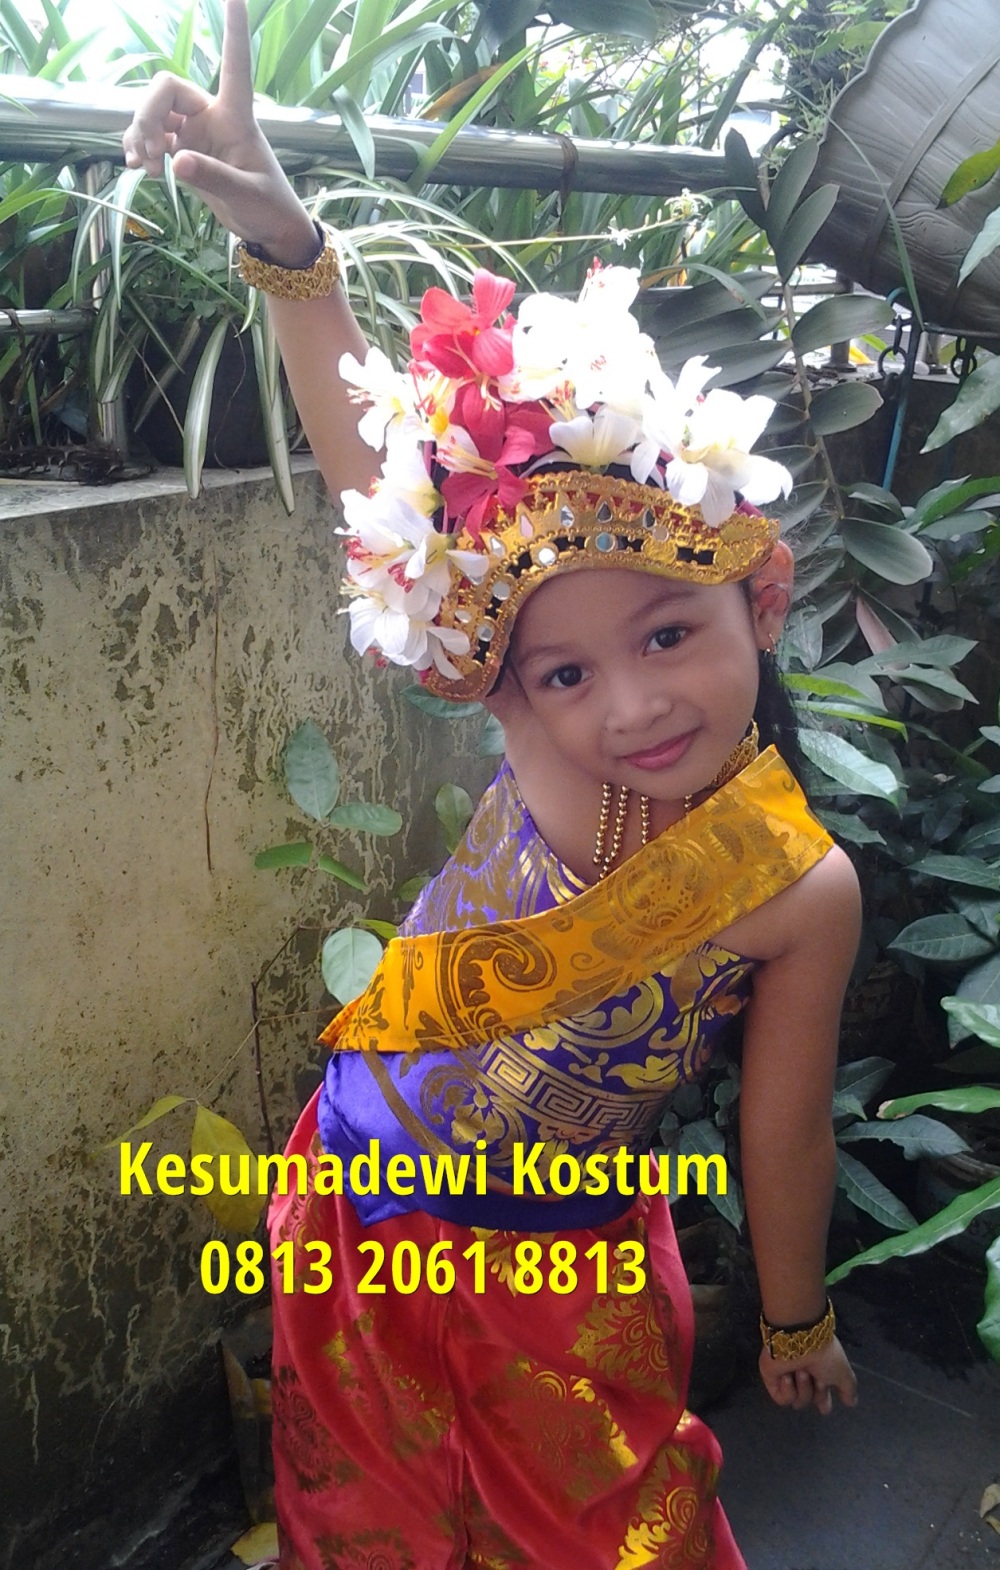 Jual Baju  Adat Bali  0813 2061 8813 Jual Baju  Adat Anak  